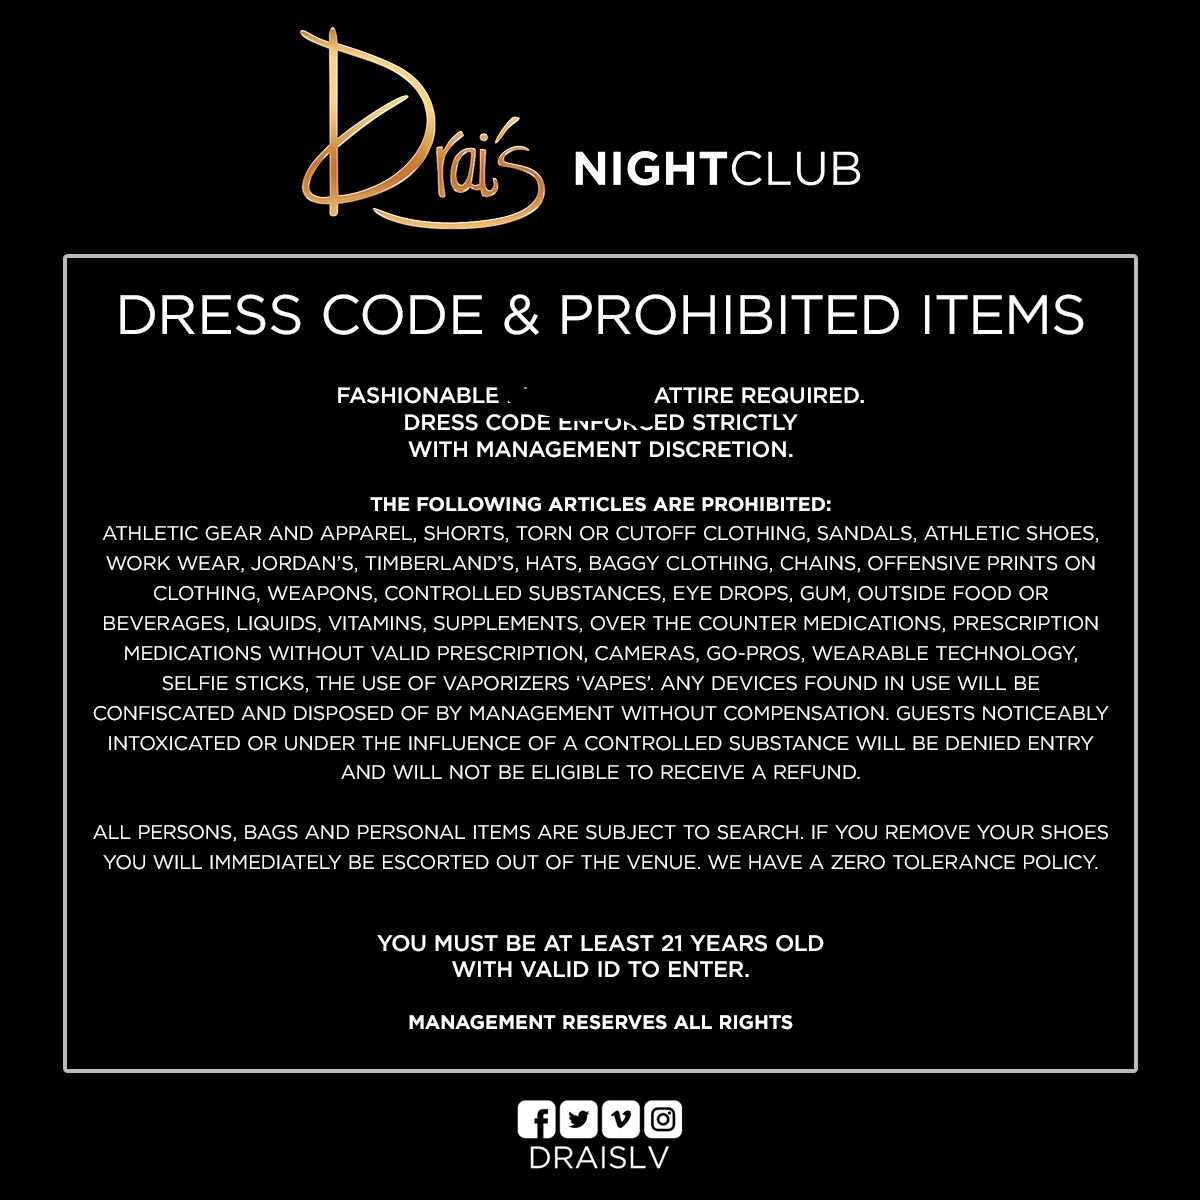 дресс код в ночных клубах